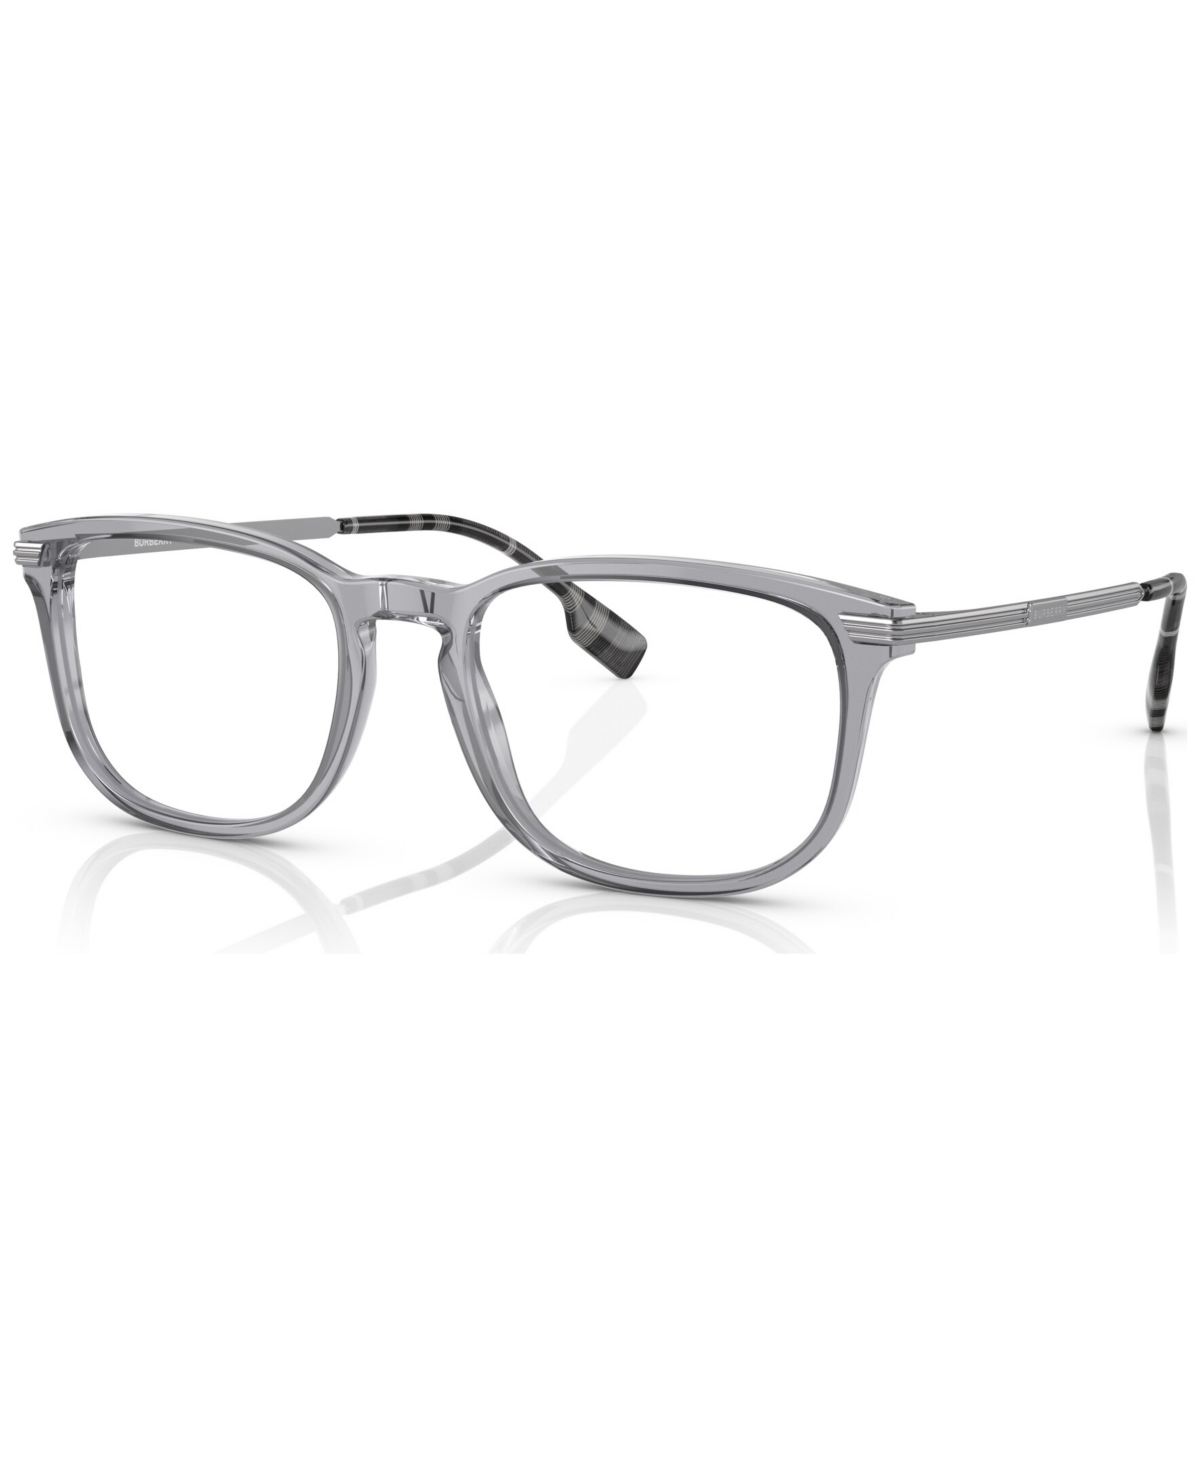 Men's Rectangle Eyeglasses, BE236956-o - Black